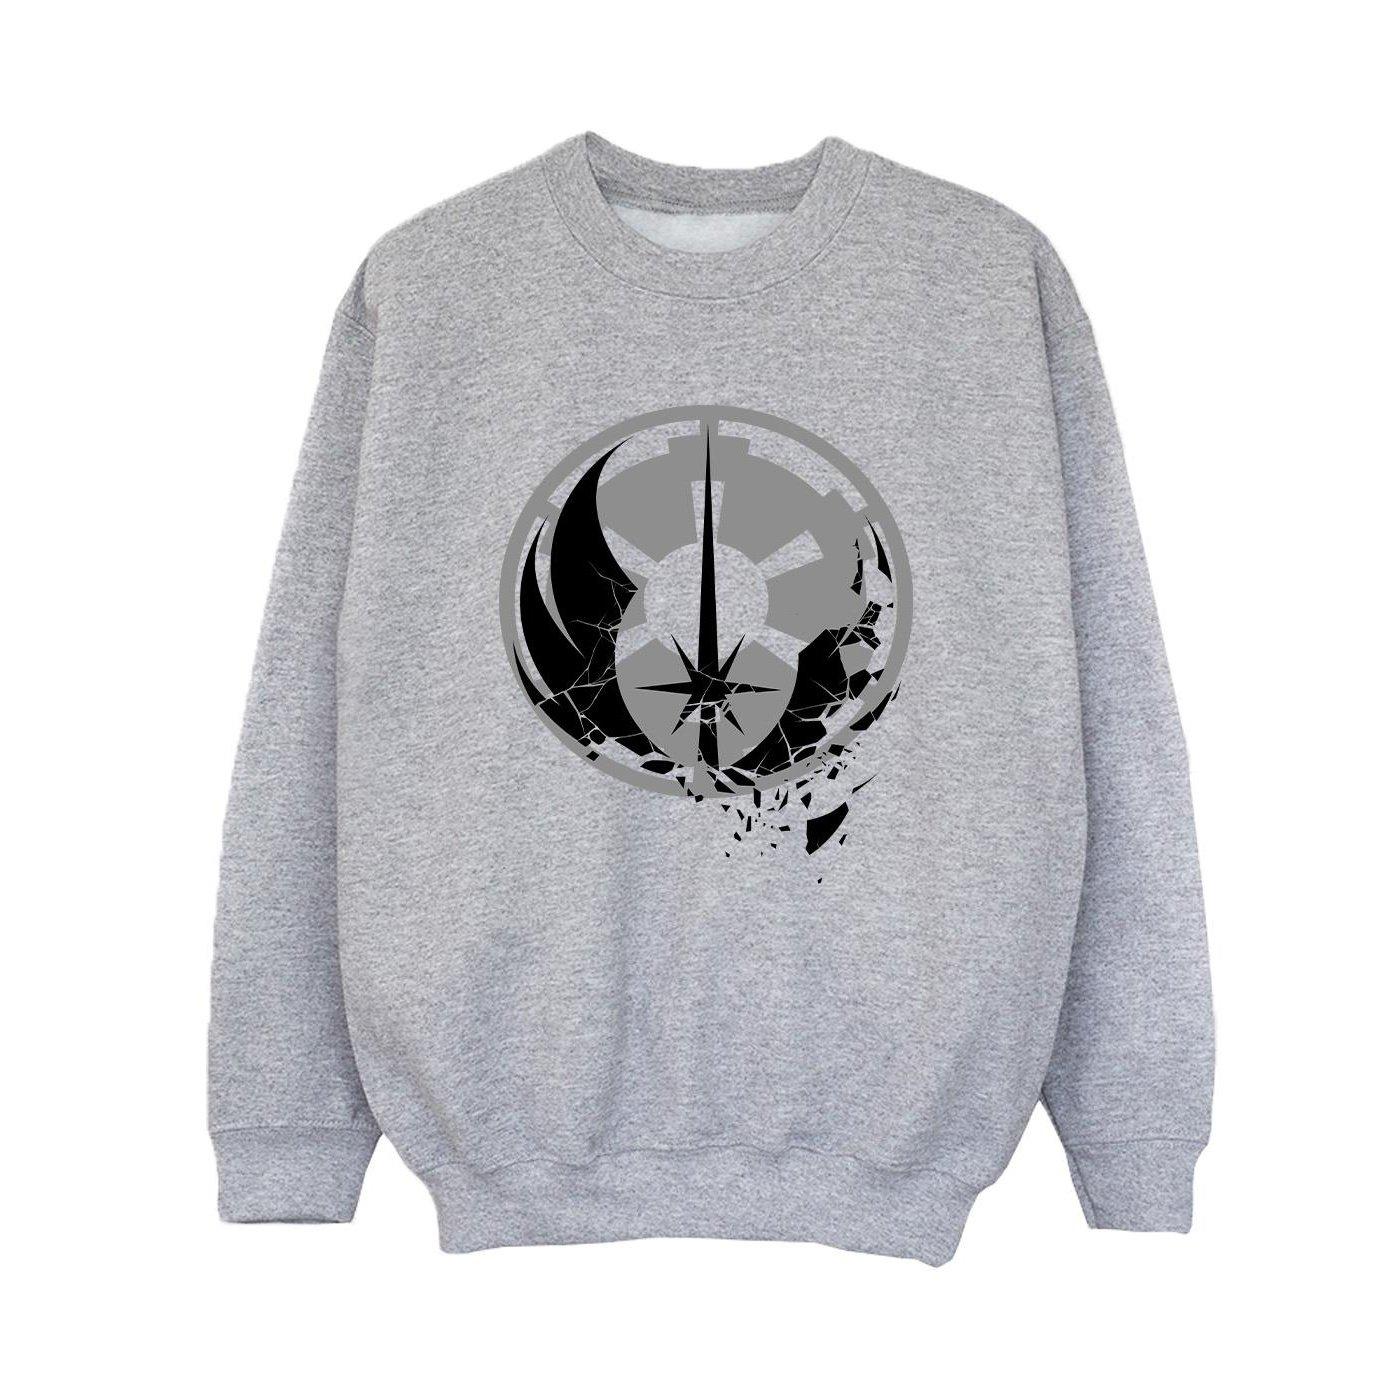 Obiwan Kenobi Fractured Logos Sweatshirt Jungen Grau 116 von STAR WARS